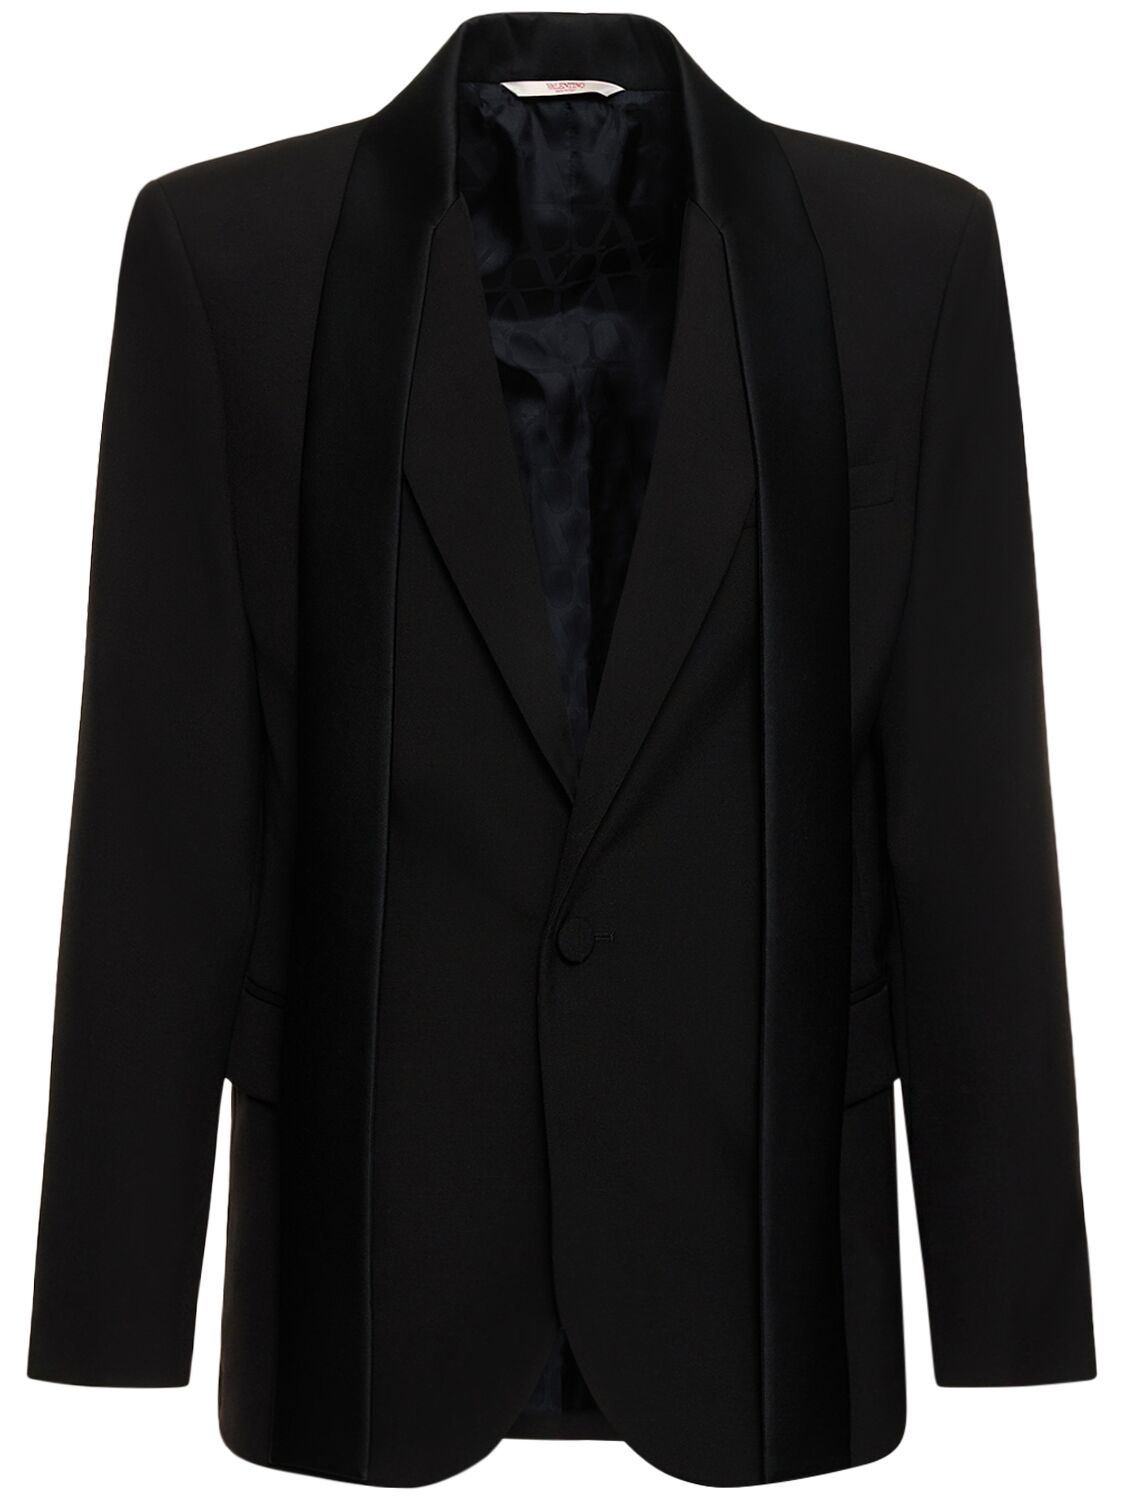 Tailored Wool Tuxedo Jacket